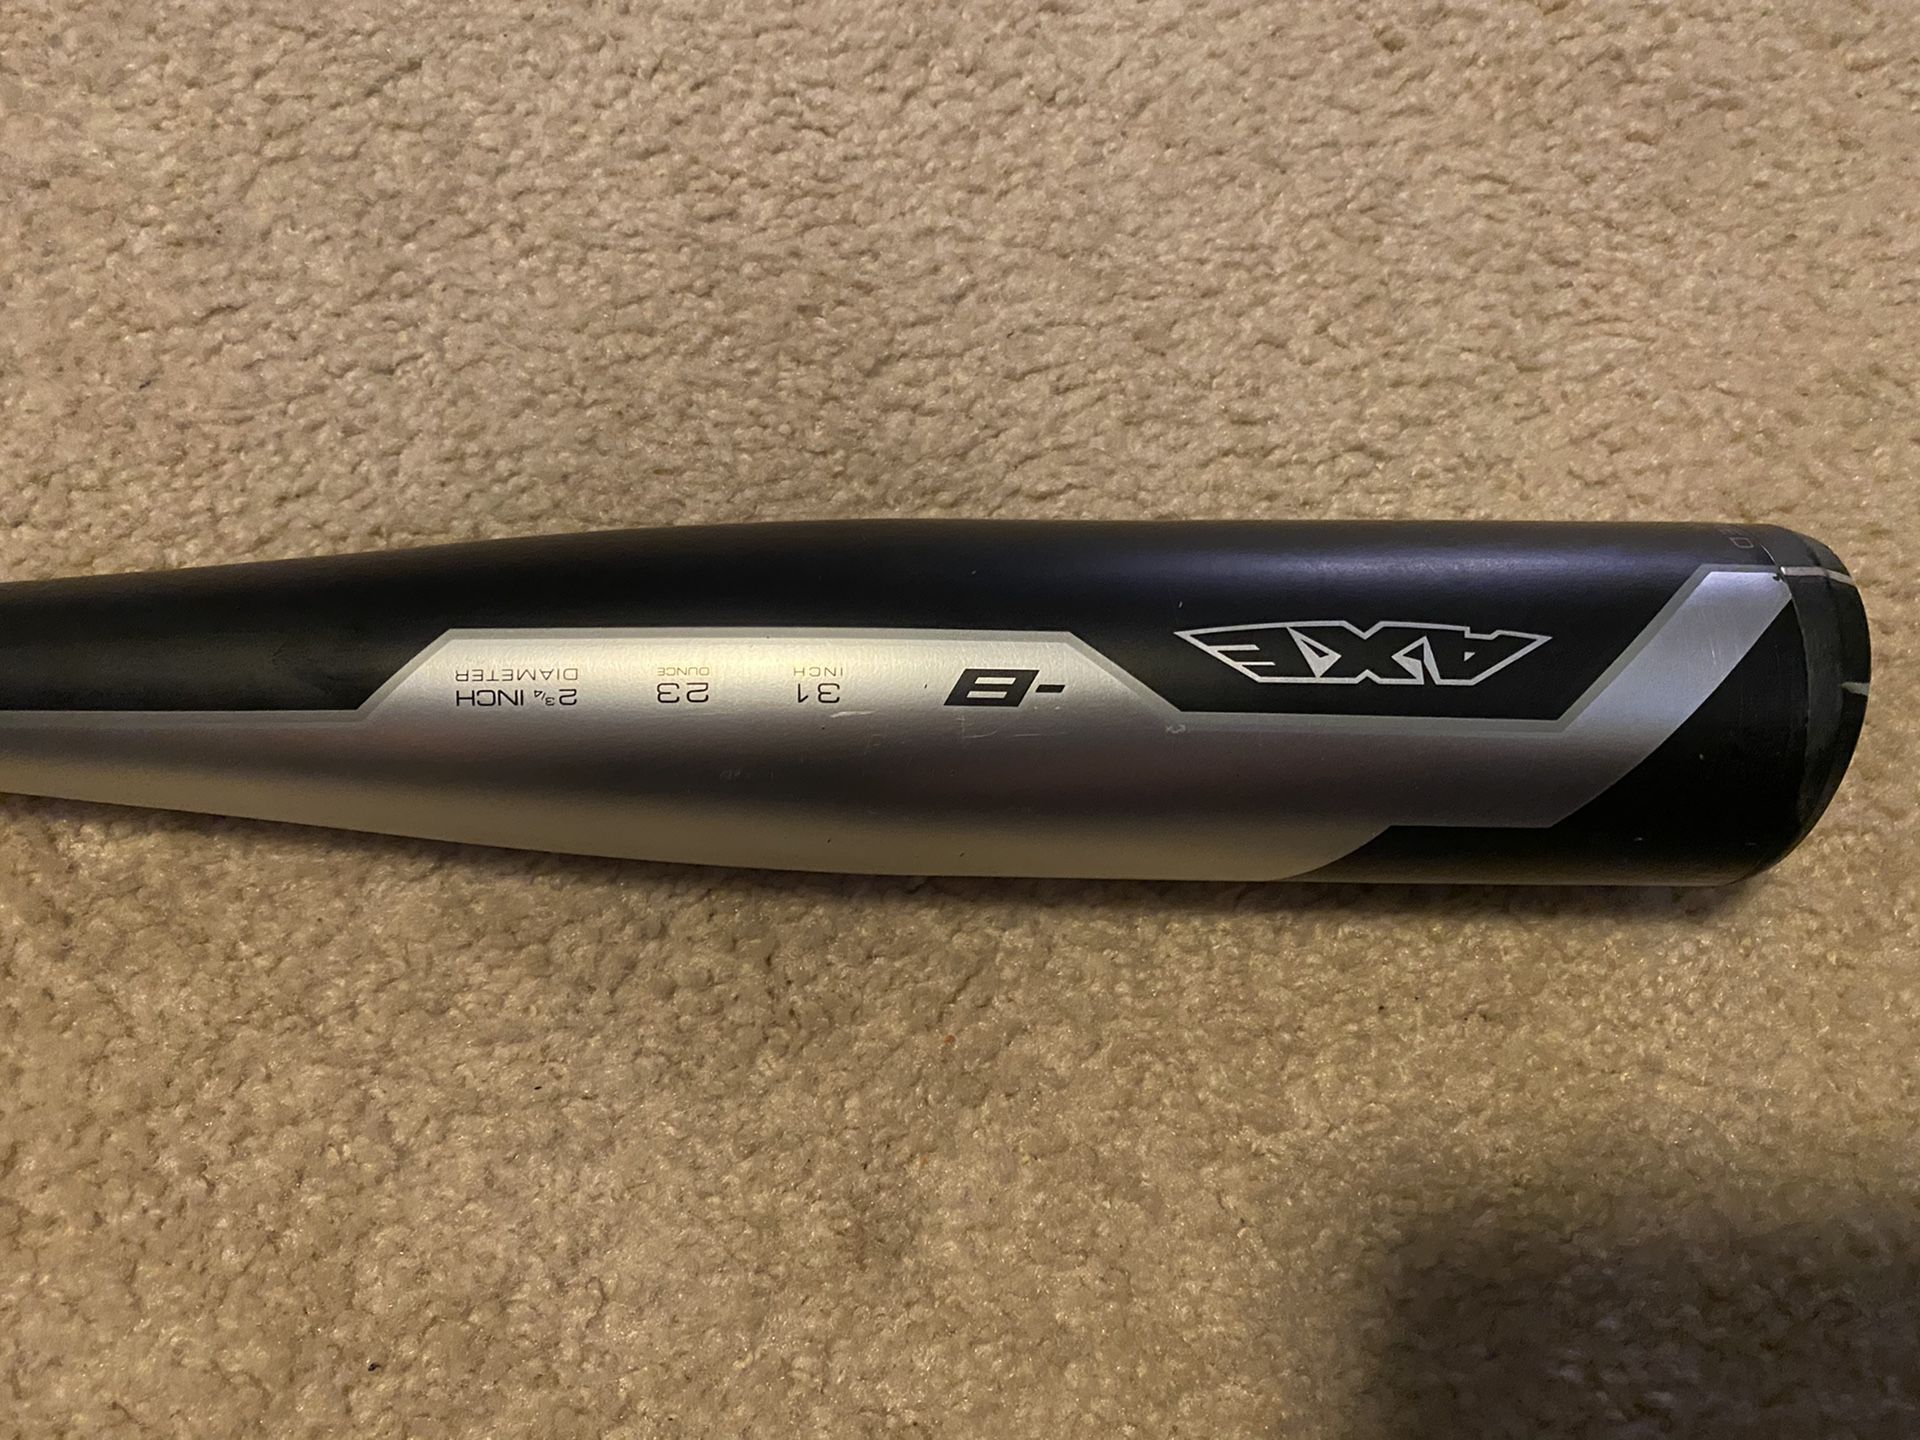 Axe baseball bat, usssa drop 8 31/23